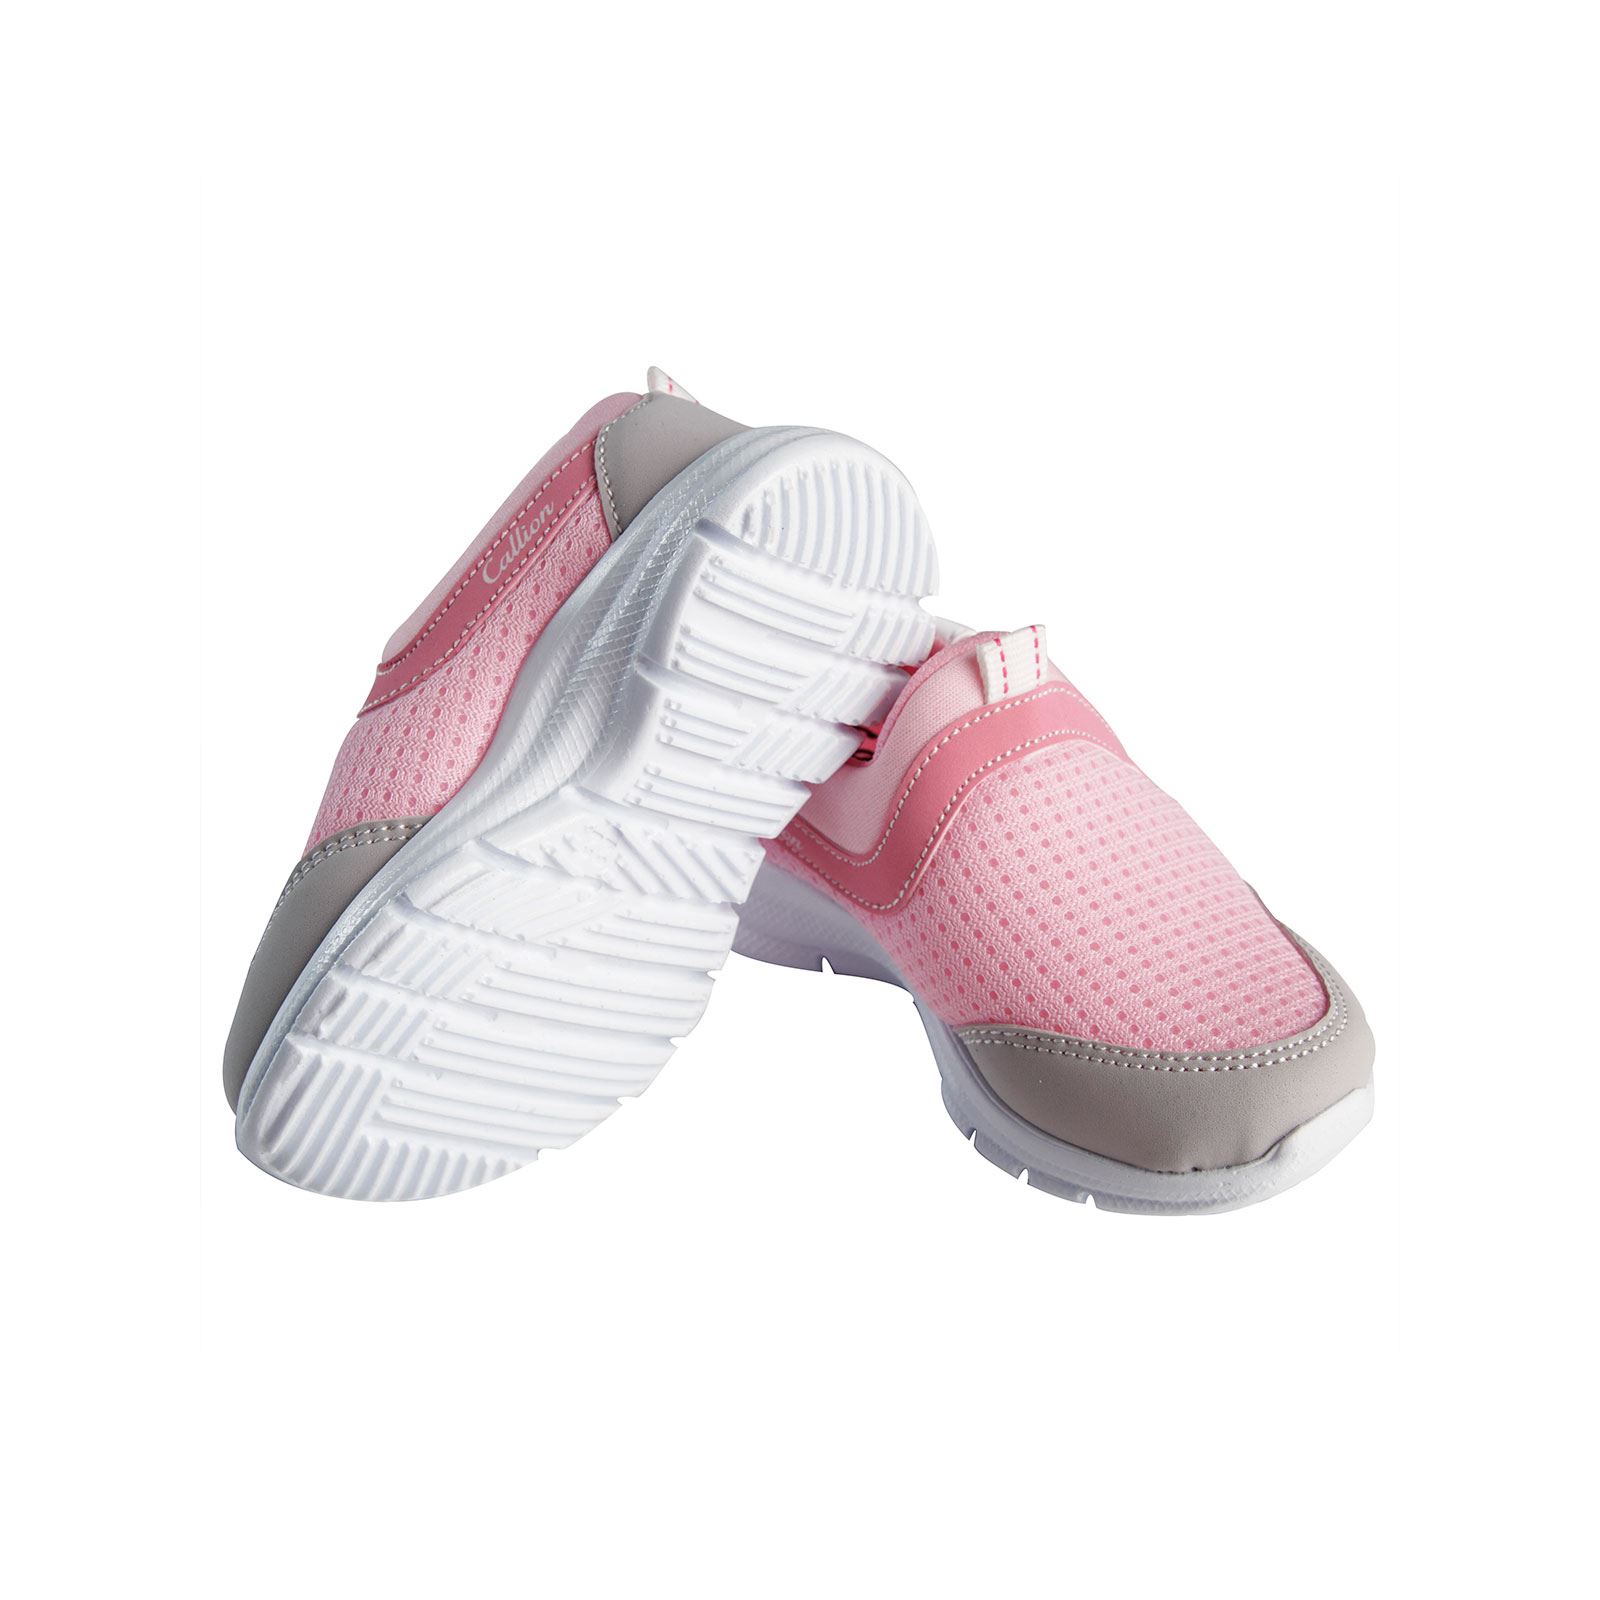 Callion Kız Çocuk Spor Ayakkabı 22-25 Numara Pembe